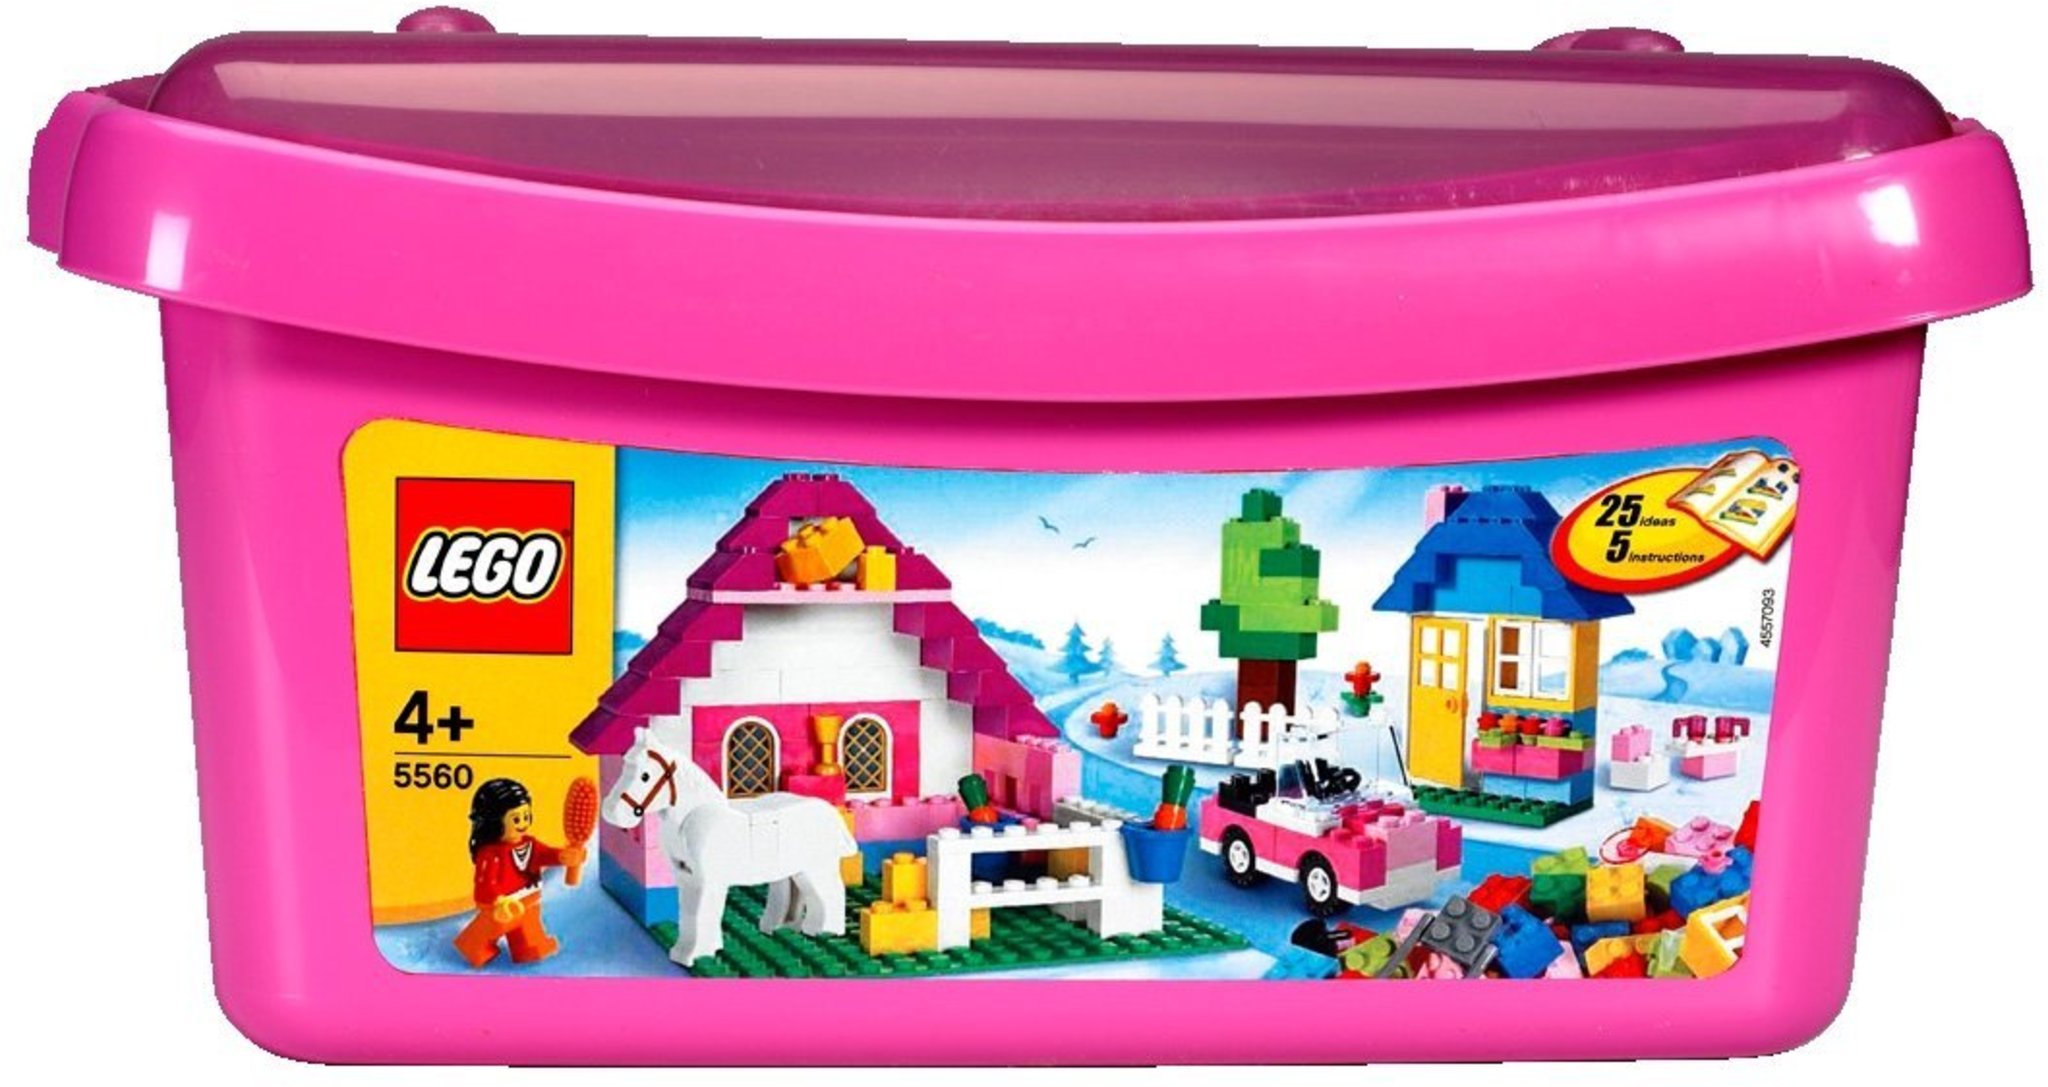 Contenitore Lego Storage Brick 8 Rosa, Cesti e Contenitori Multiuso